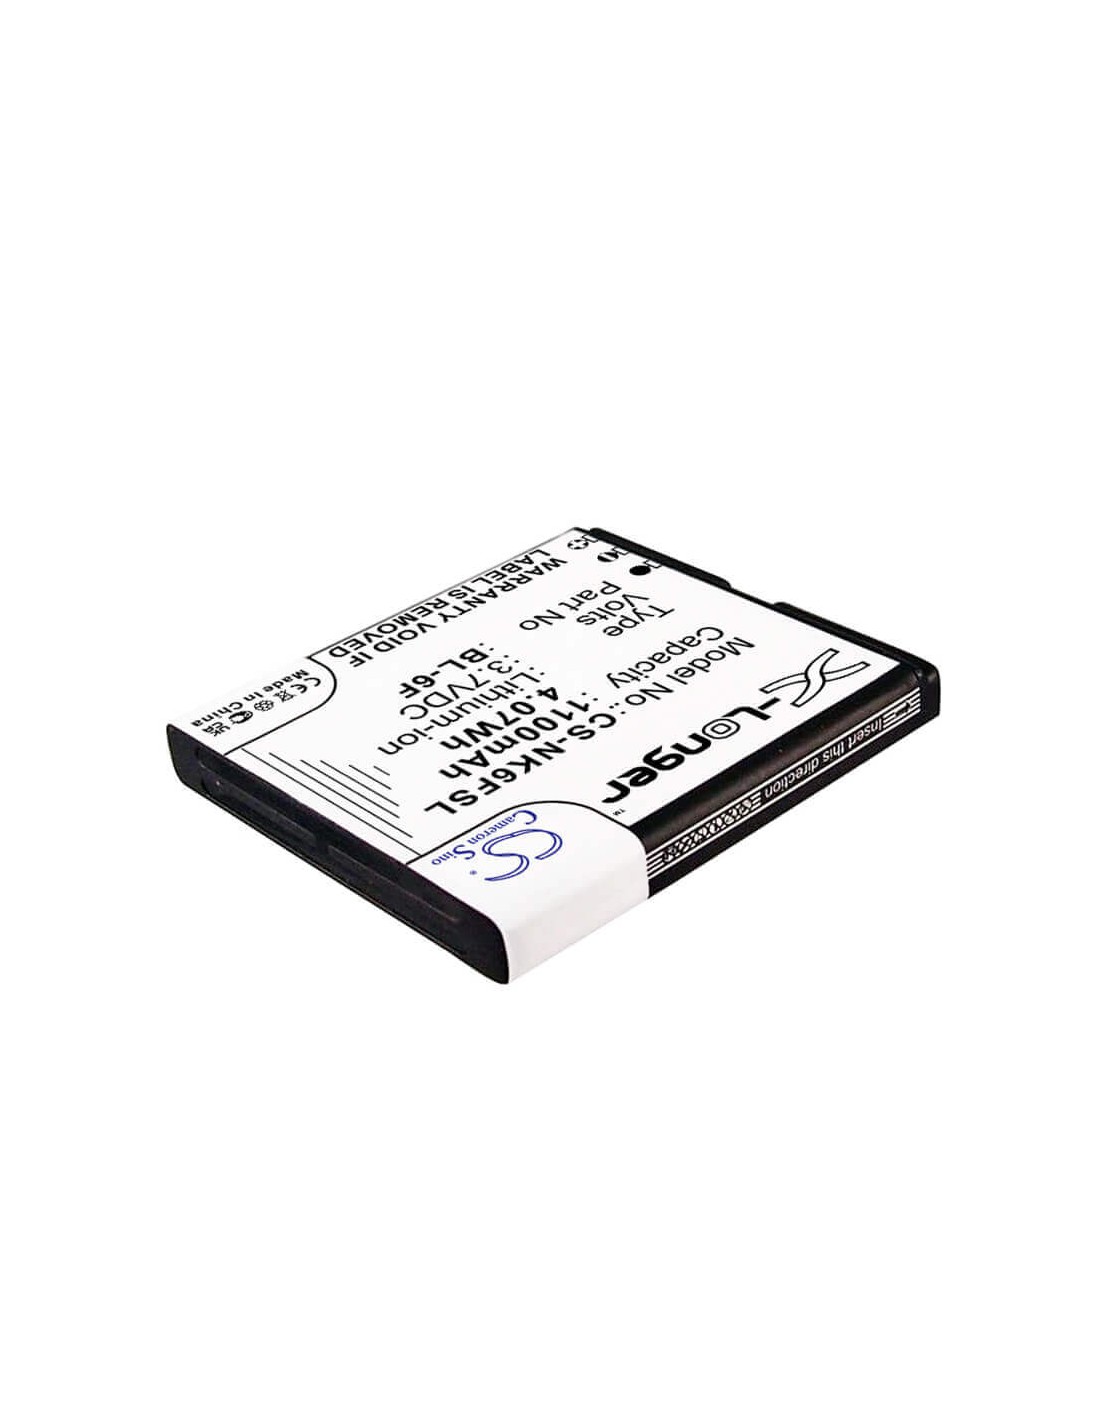 Battery for Nokia N95 8GB, N78, N79 3.7V, 1200mAh - 4.44Wh